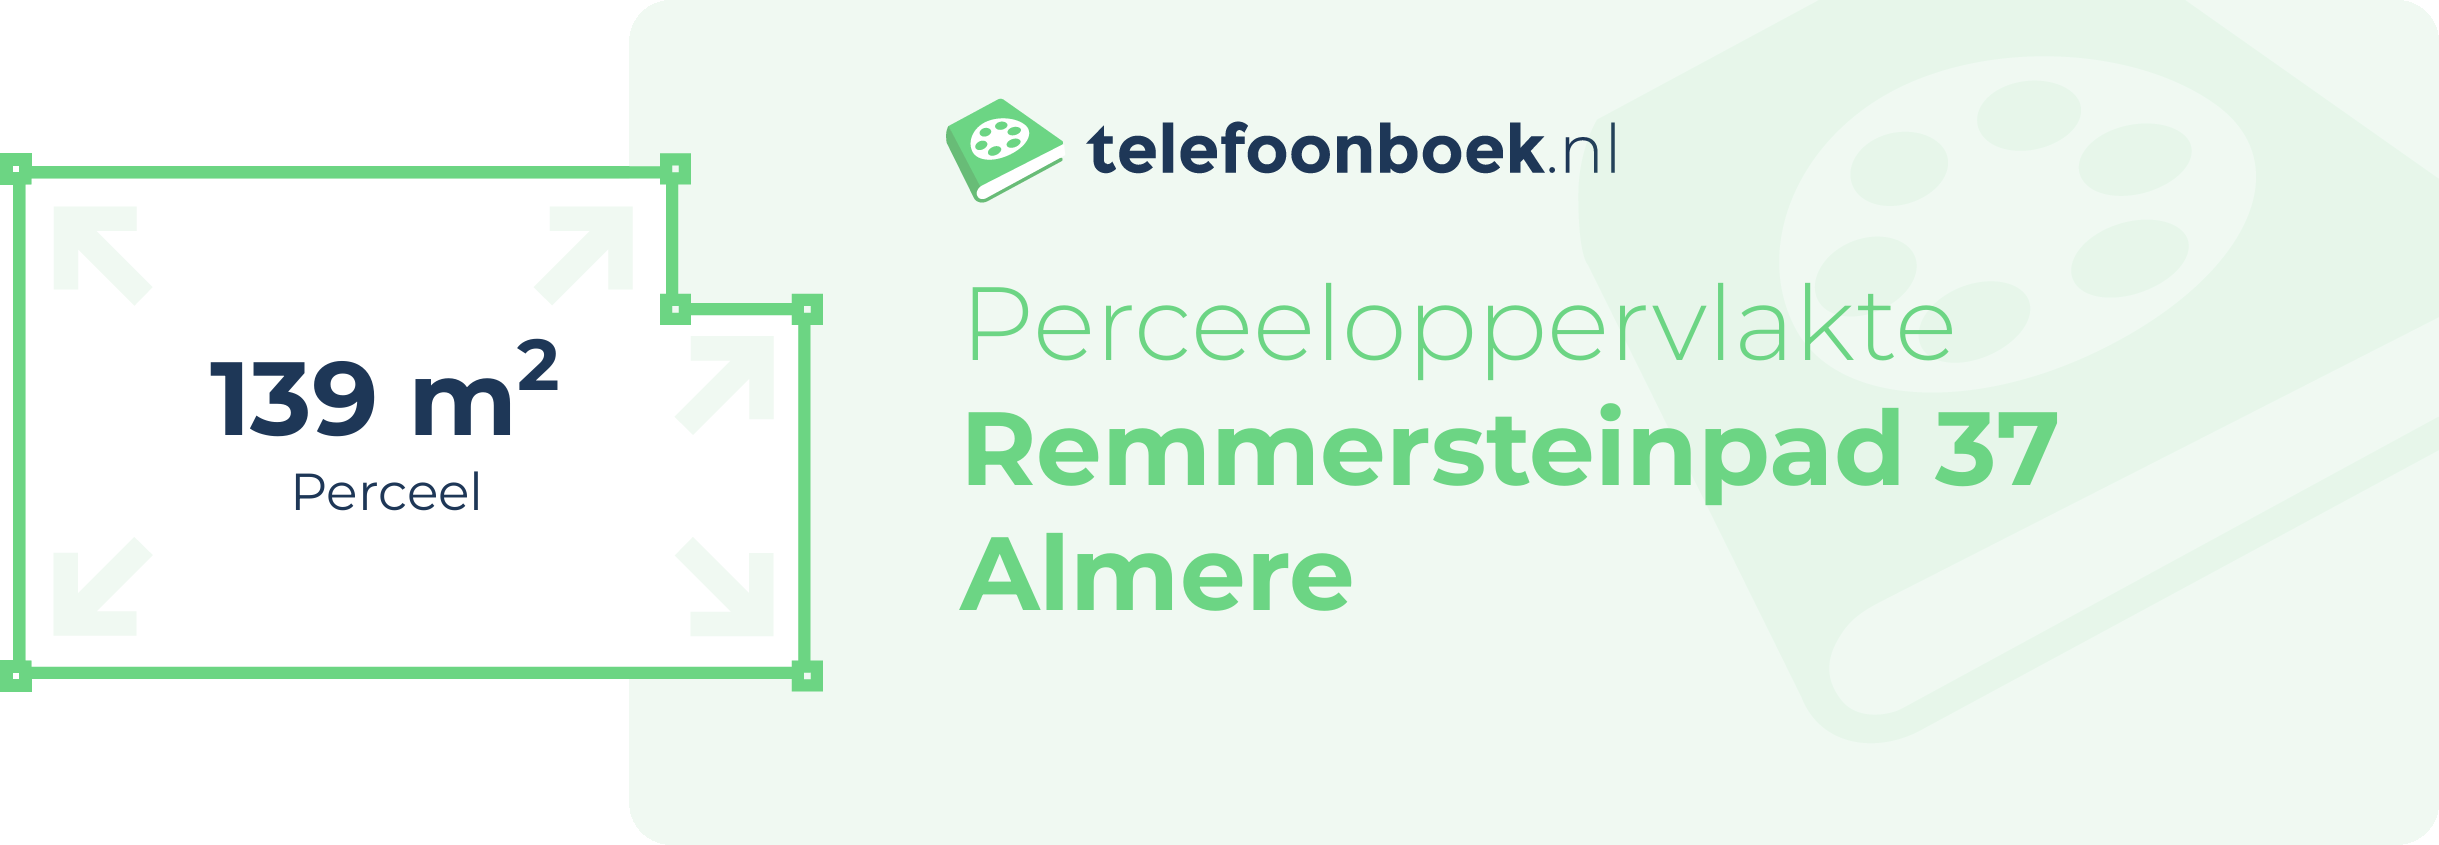 Perceeloppervlakte Remmersteinpad 37 Almere